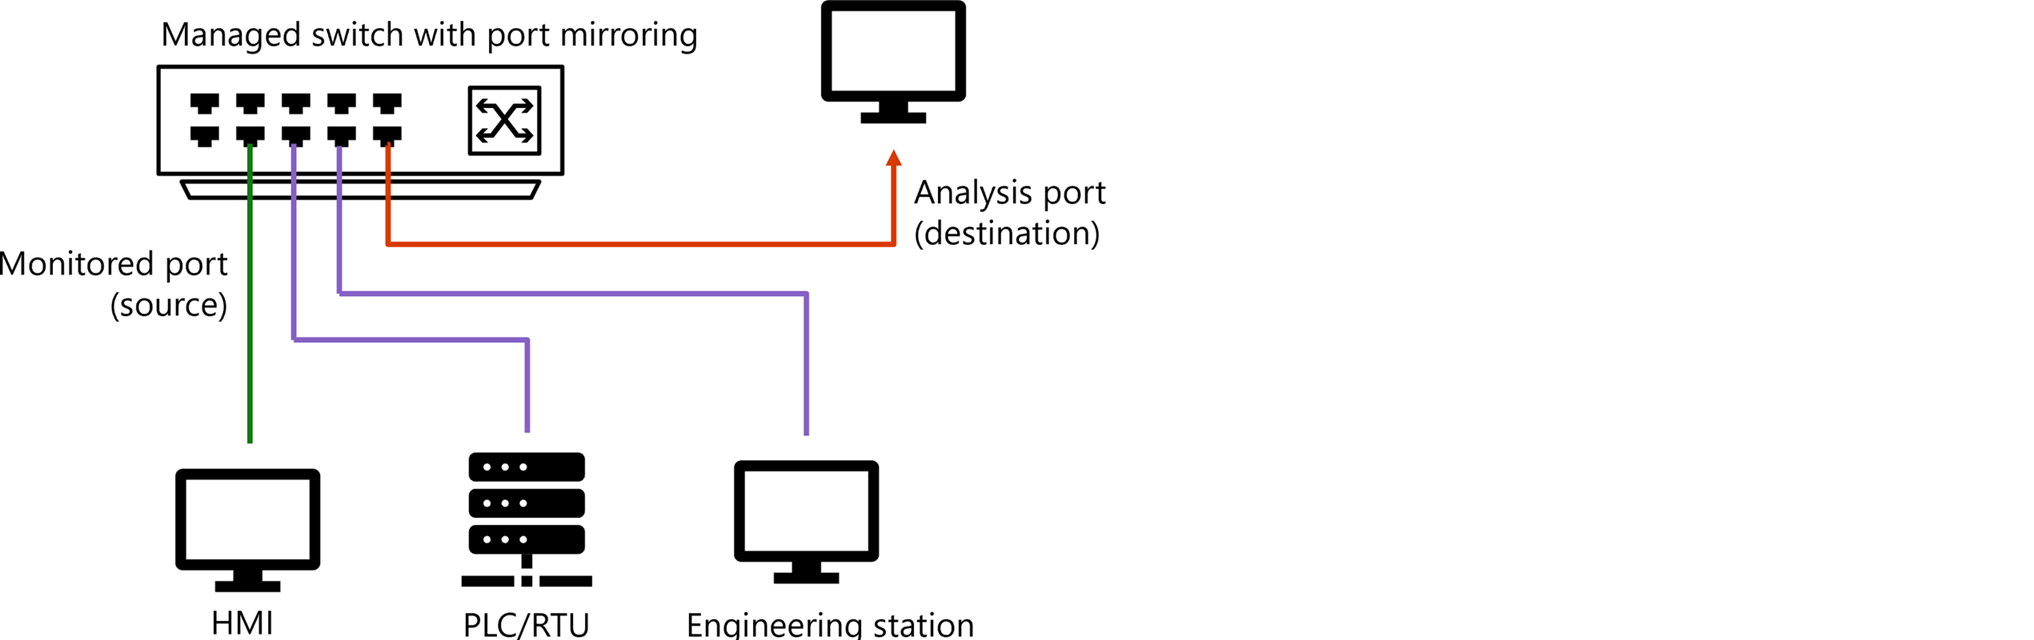 Diagrama de un conmutador administrado con creación de reflejo del puerto.